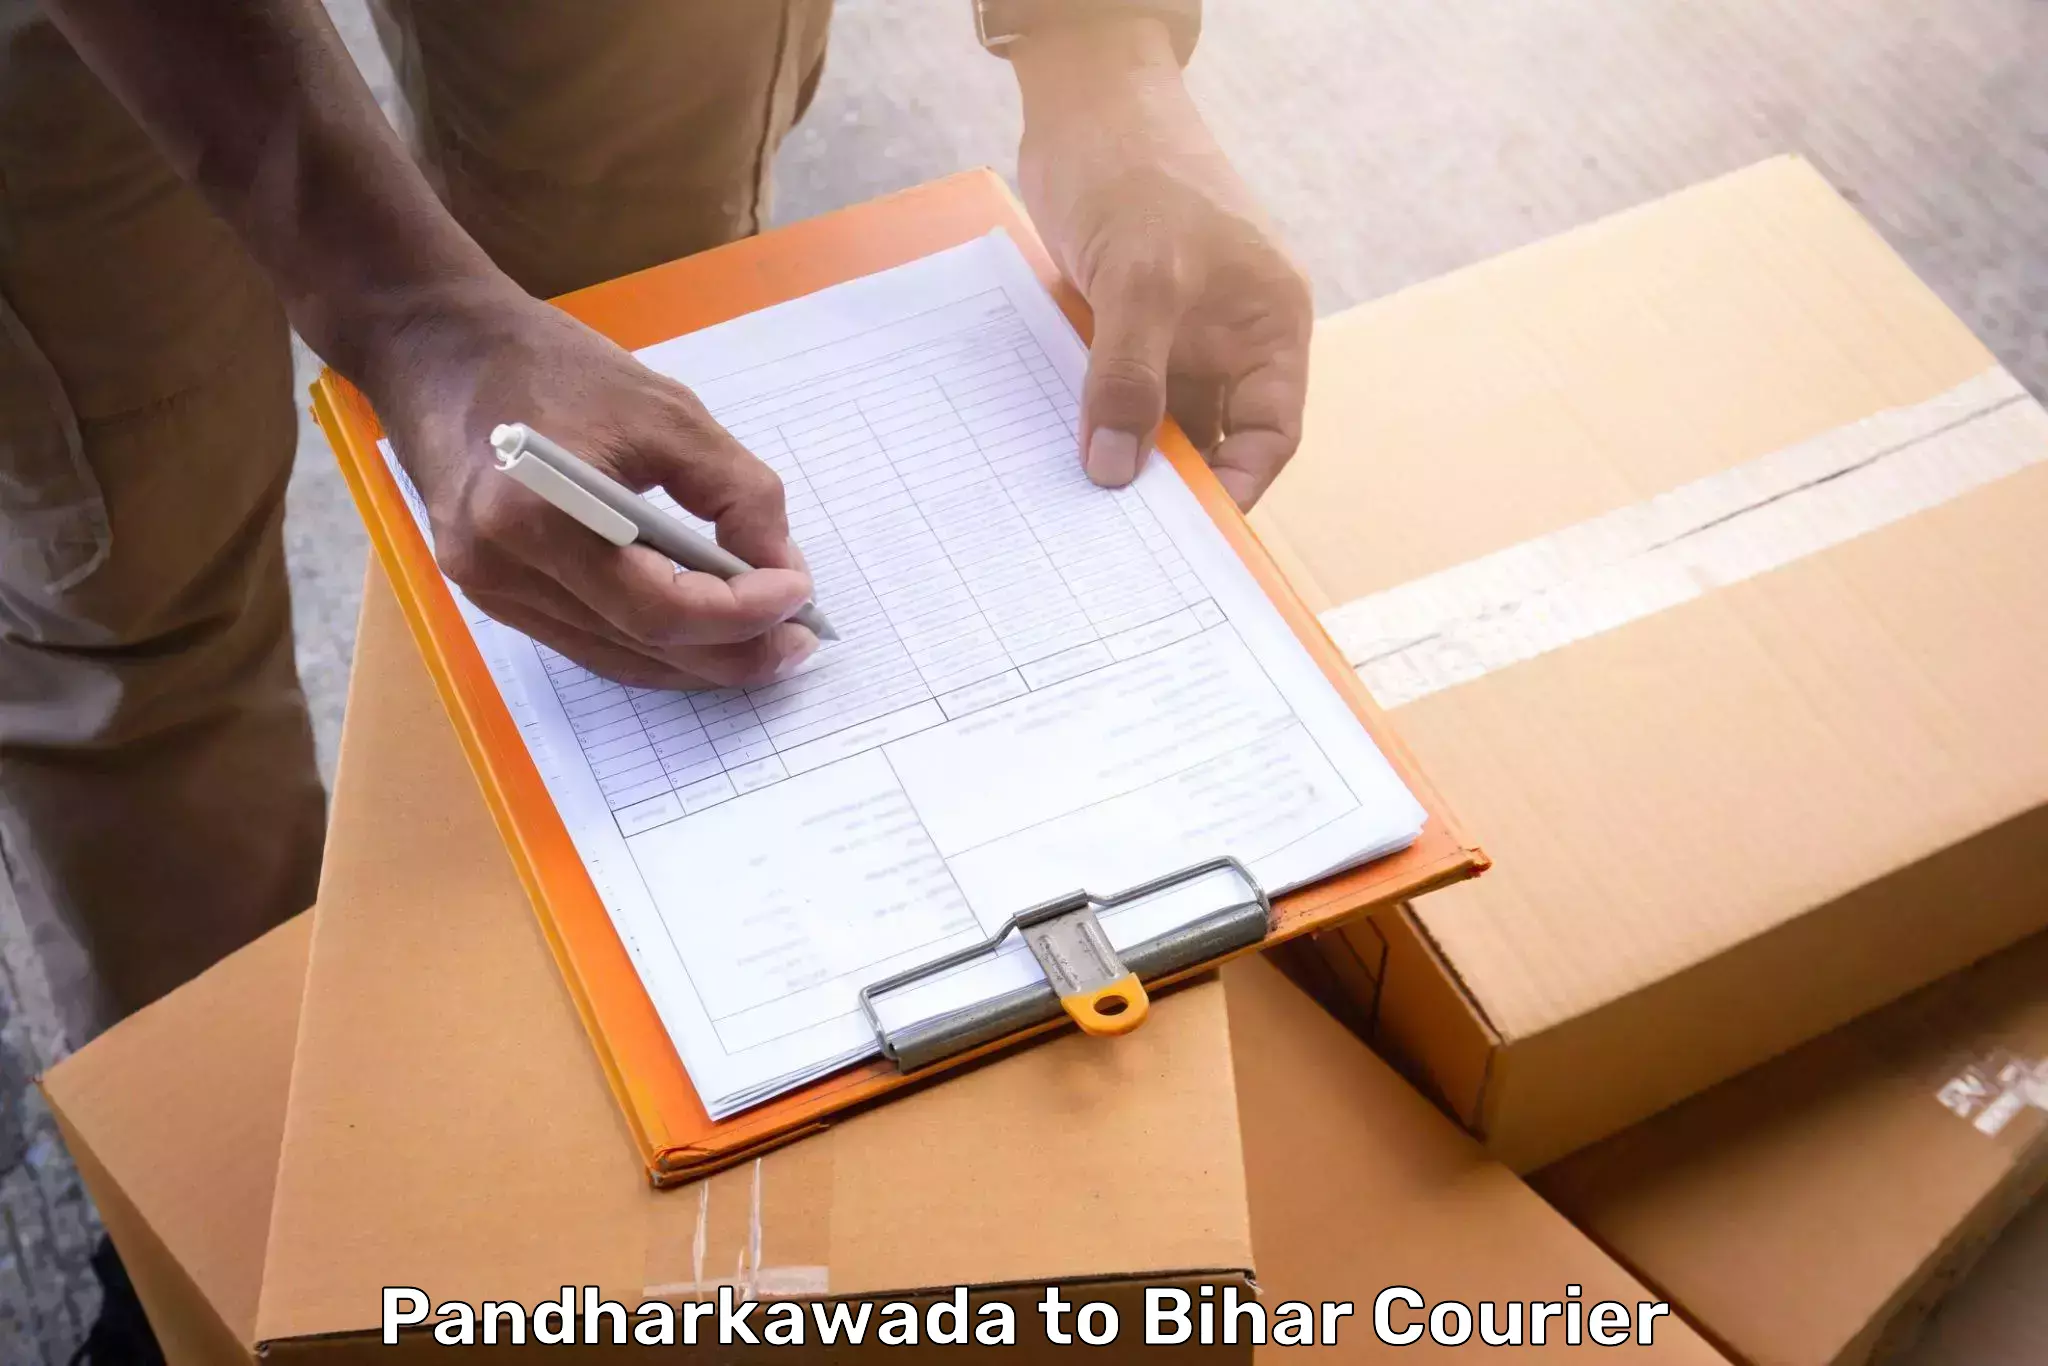 Baggage relocation service Pandharkawada to Nalanda